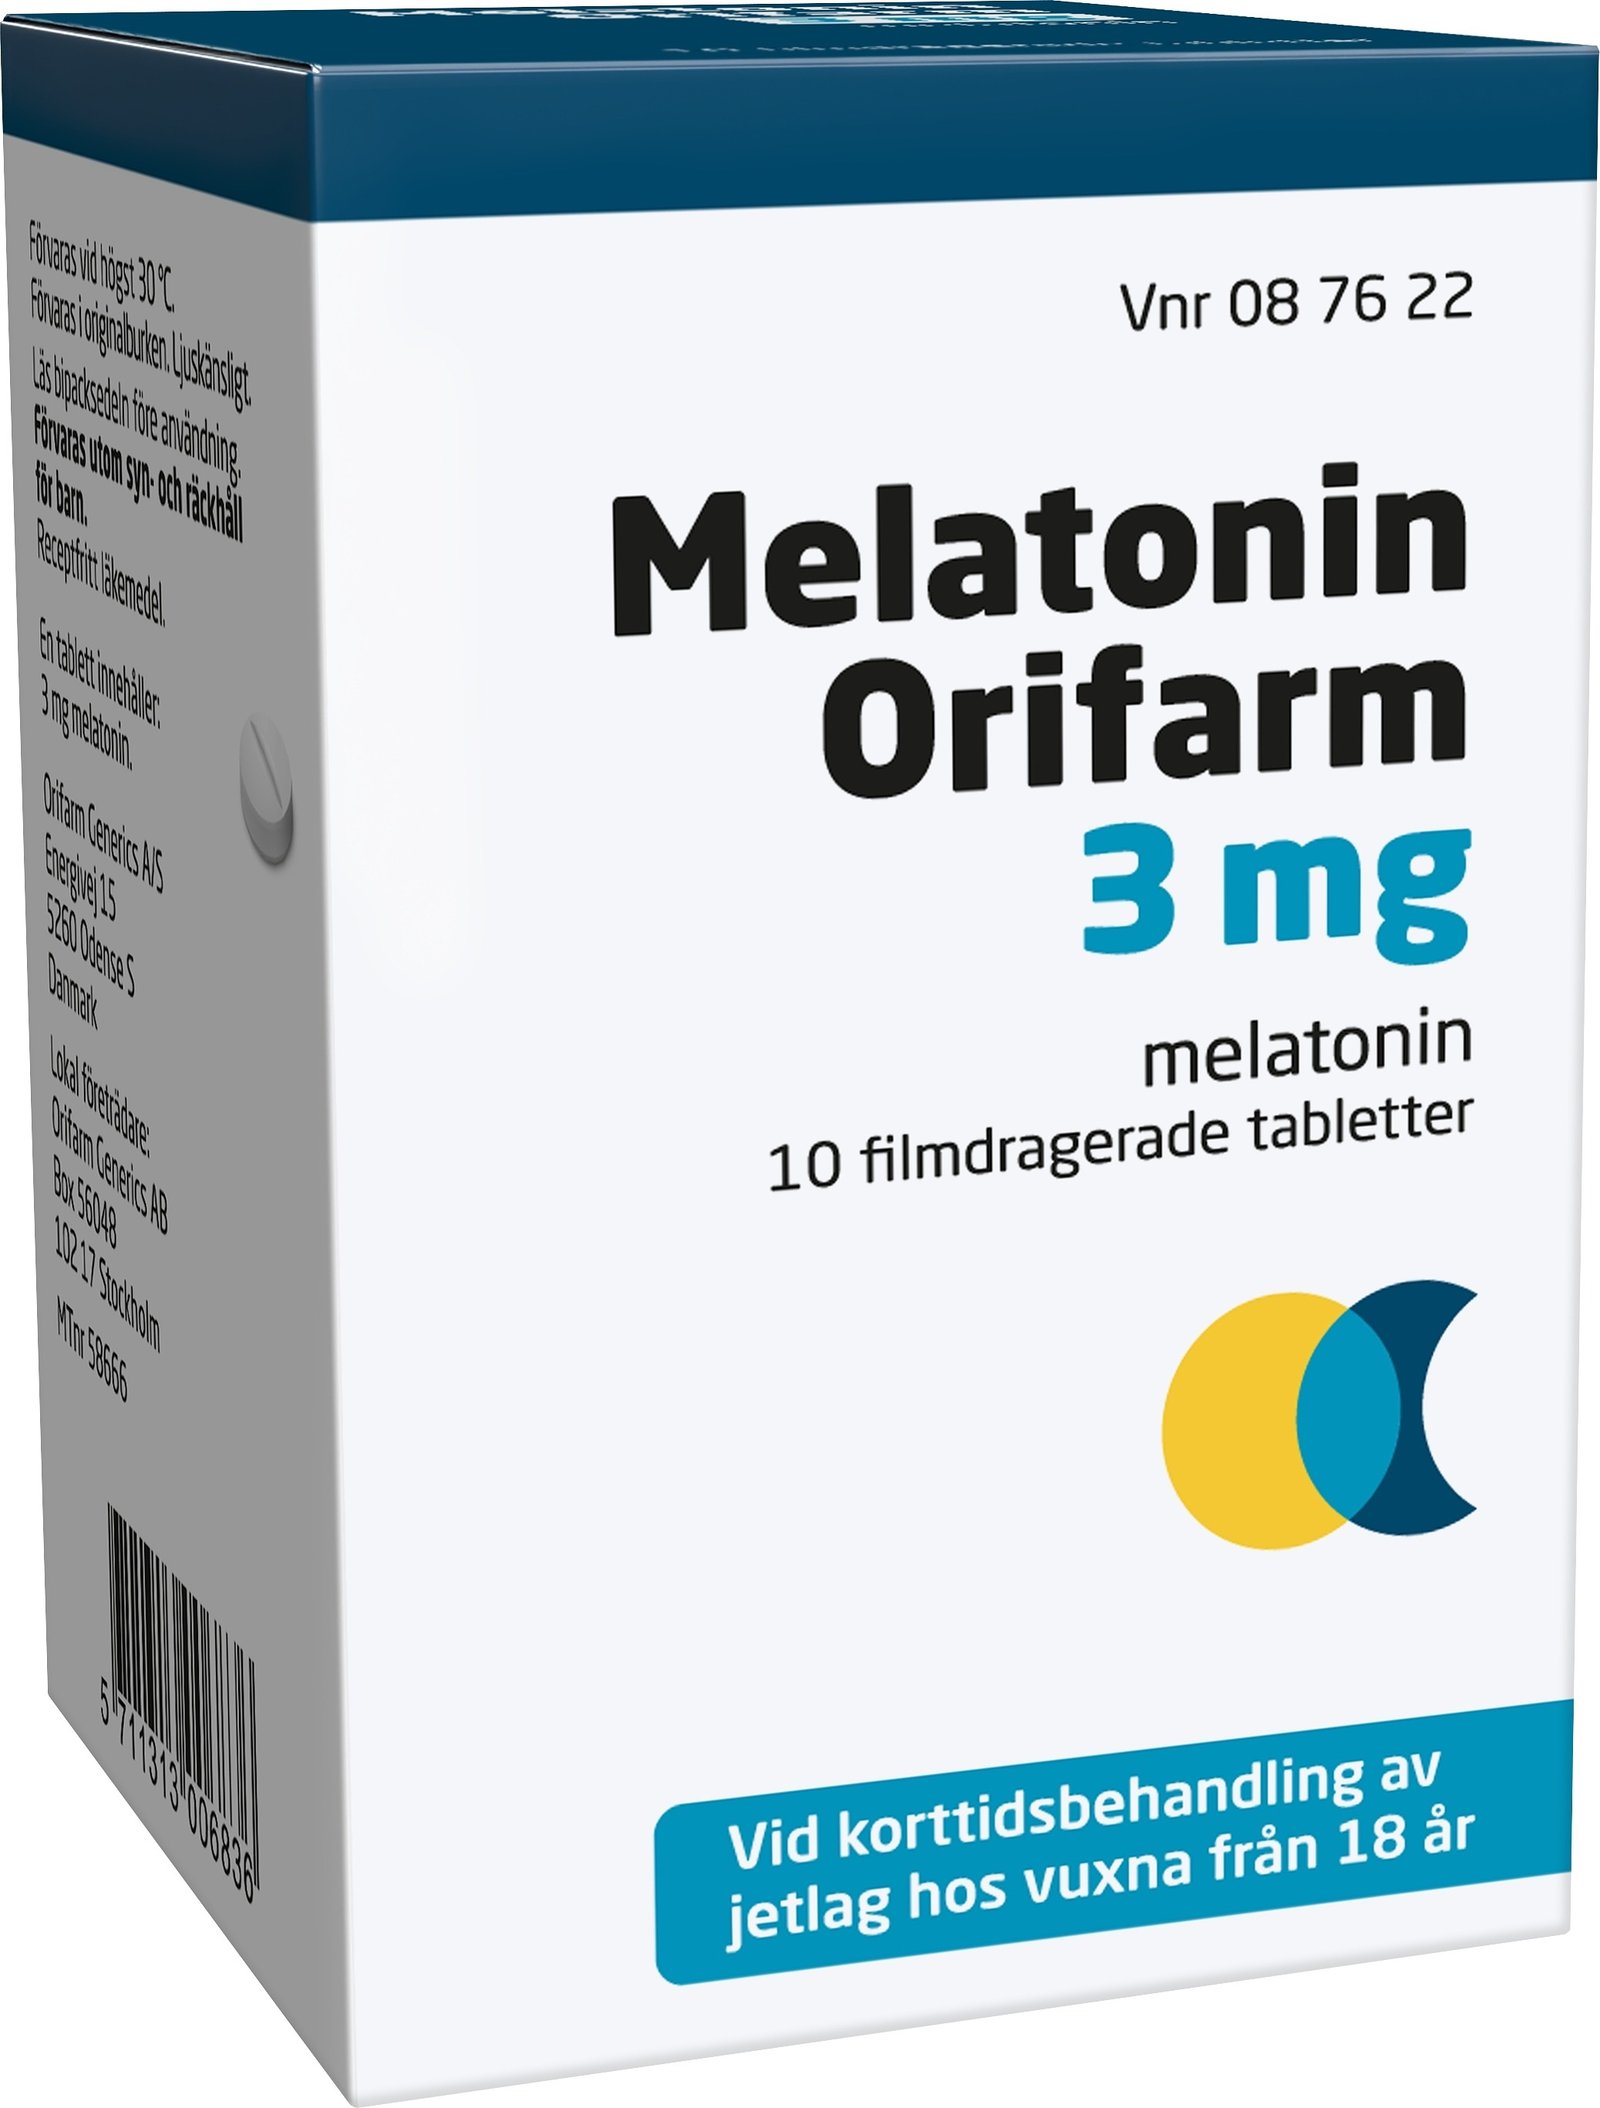 Melatonin Orifarm 3mg Melatonin 10 tabletter